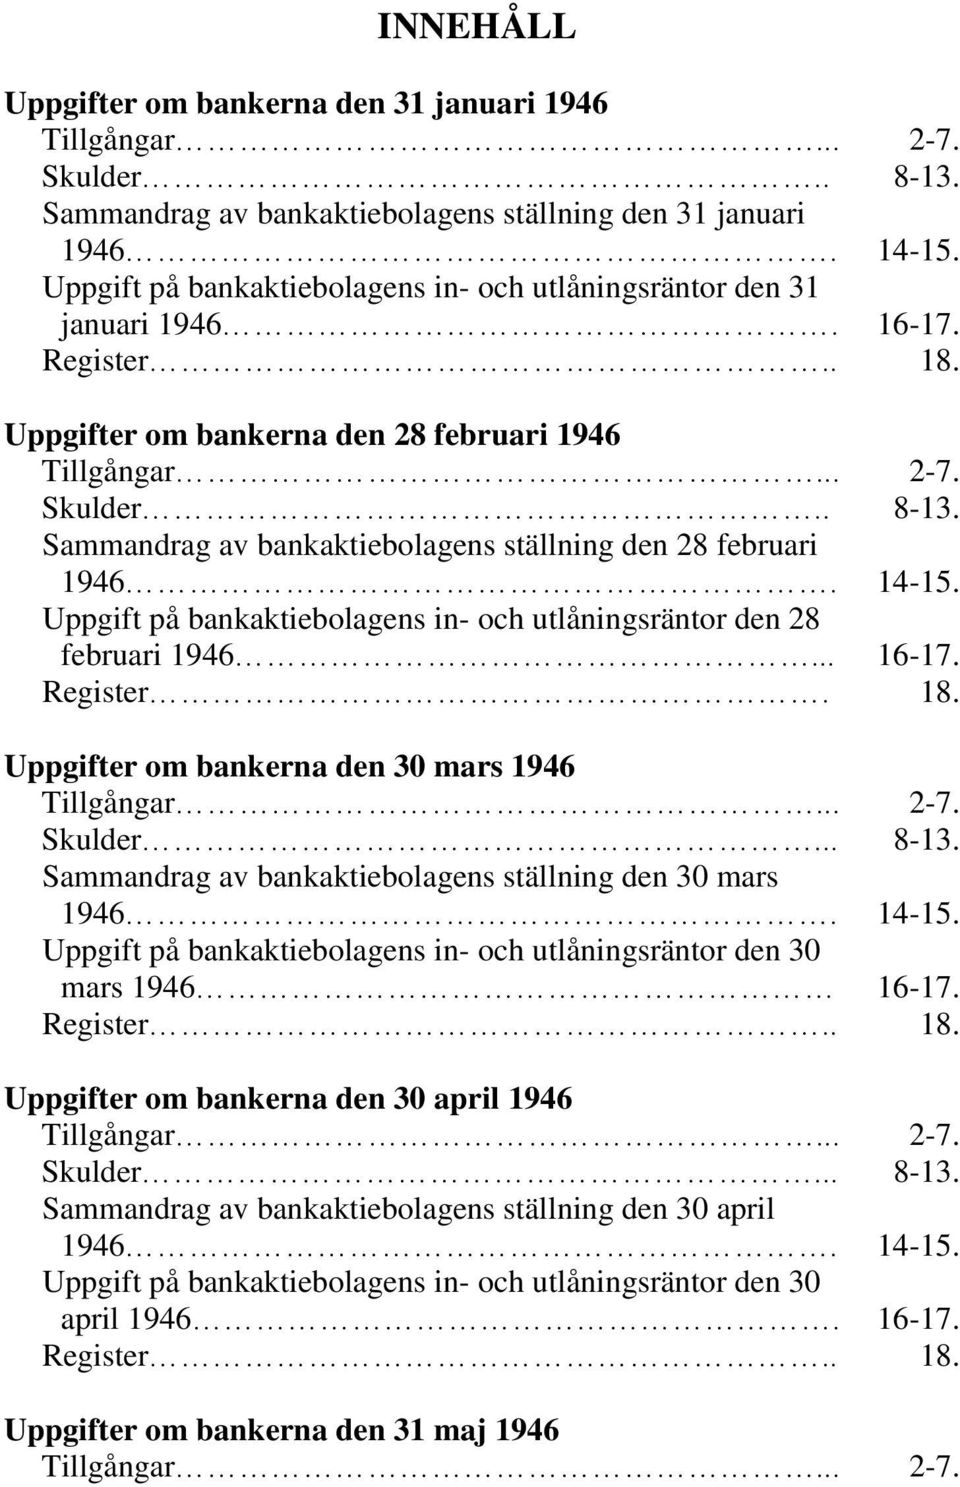 Sammandrag av bankaktiebolagens ställning den 28 februari 1946. 14-15. Uppgift på bankaktiebolagens in- och utlåningsräntor den 28 februari 1946... 16-17. Register. 18.